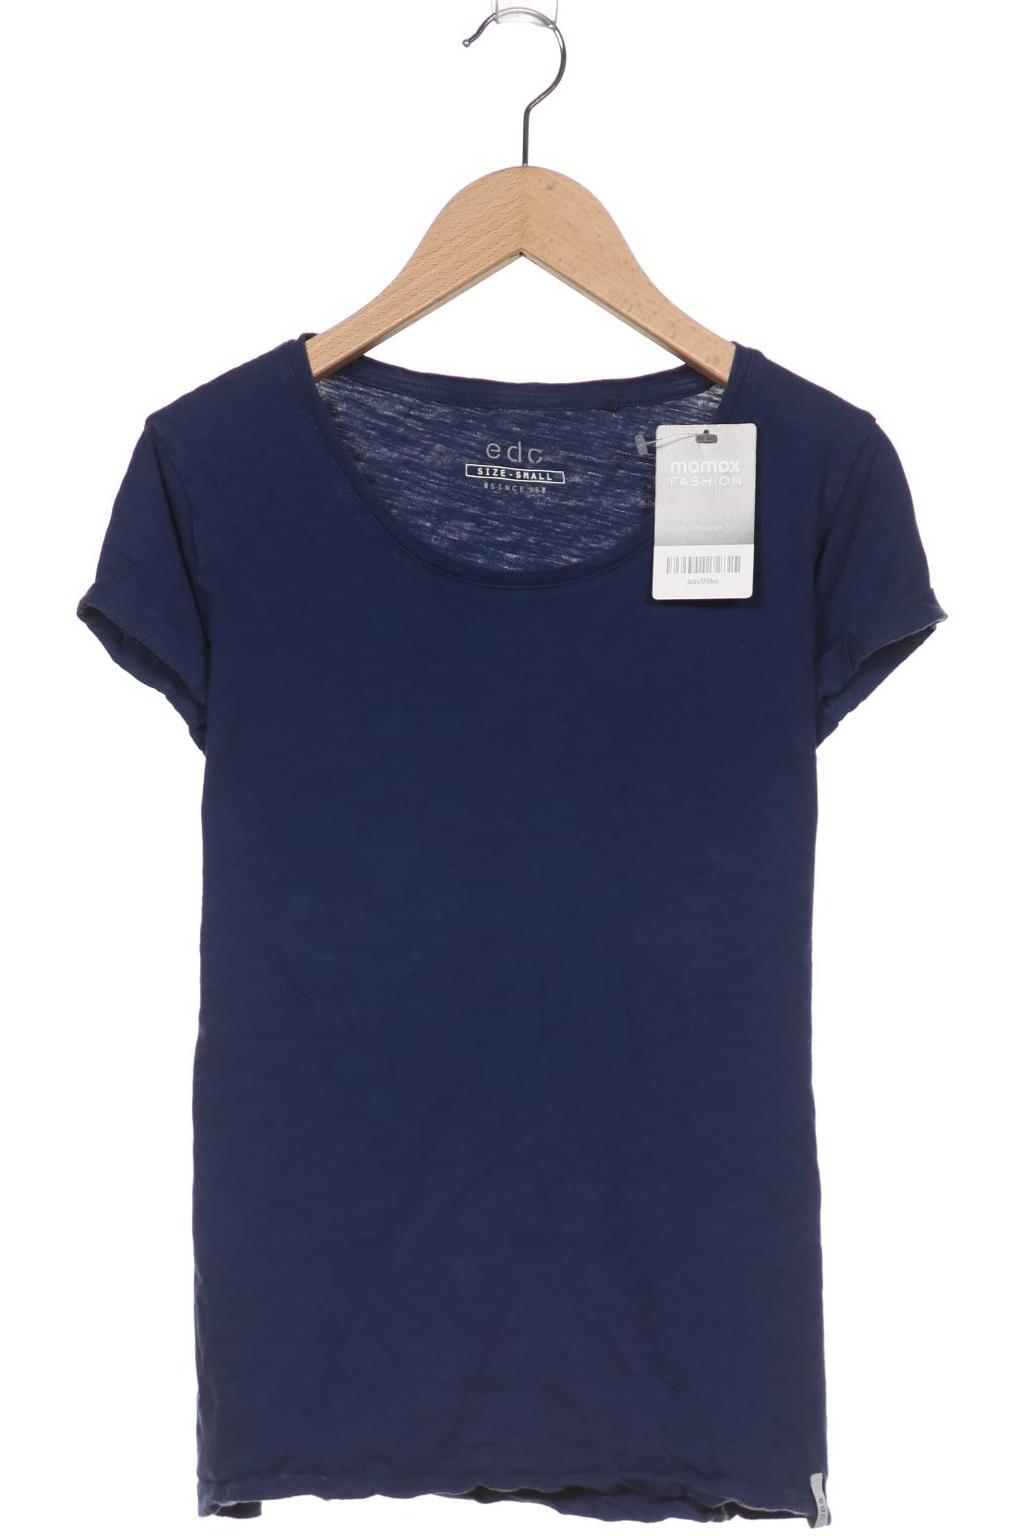 edc by Esprit Damen T-Shirt, marineblau von edc by esprit